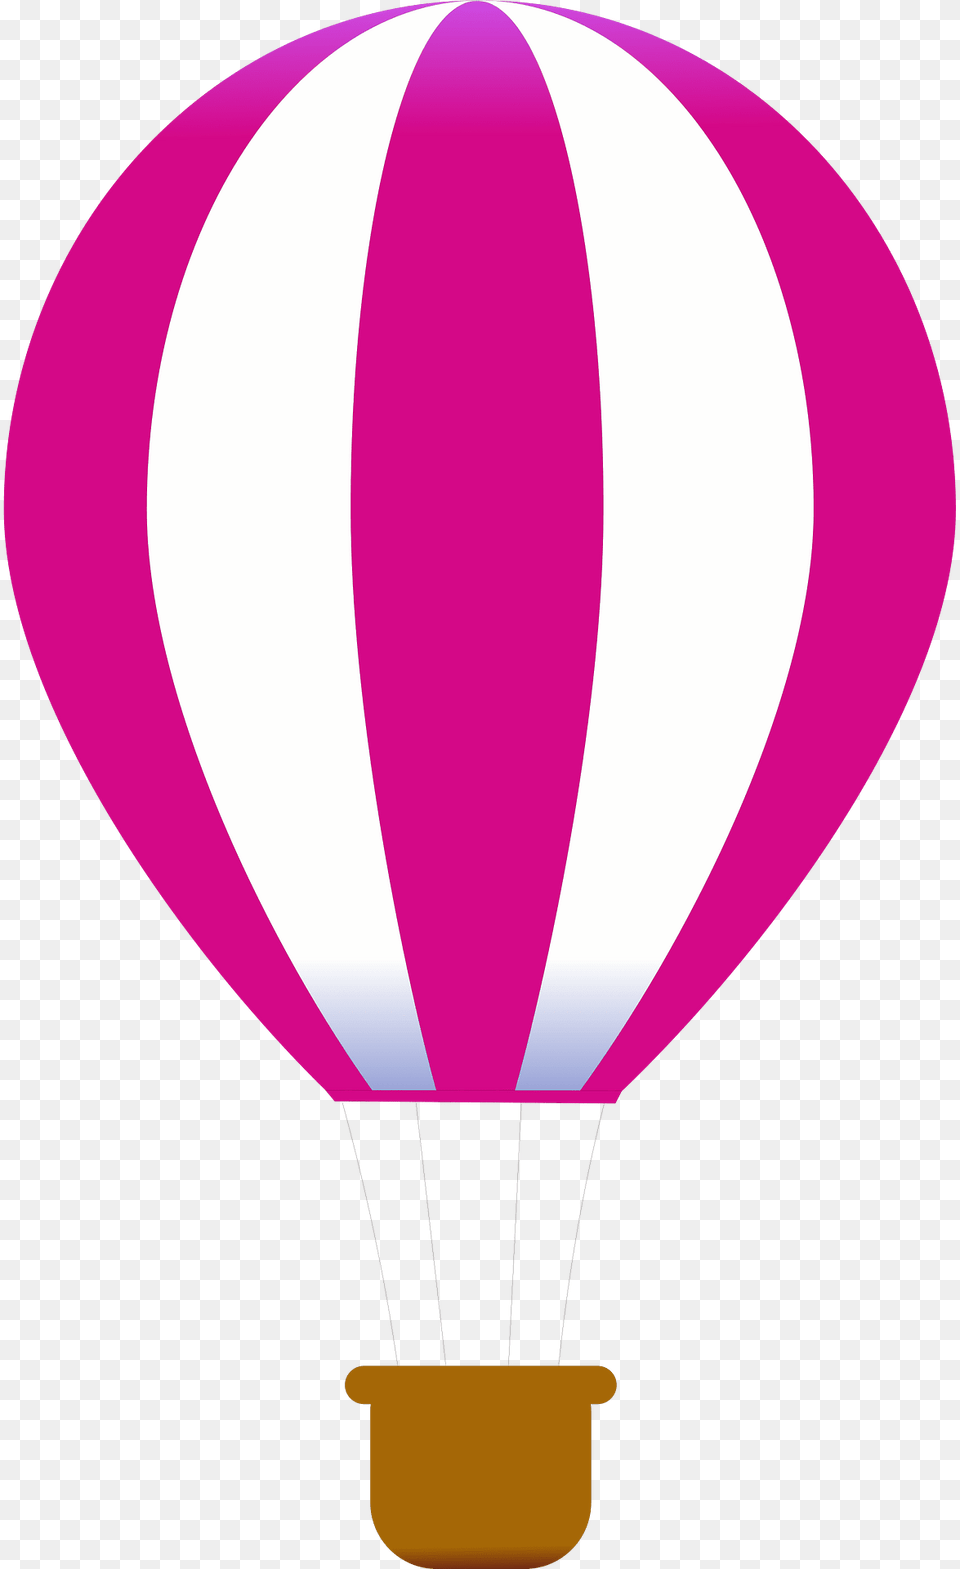 Balloon Clipart, Aircraft, Hot Air Balloon, Transportation, Vehicle Png Image